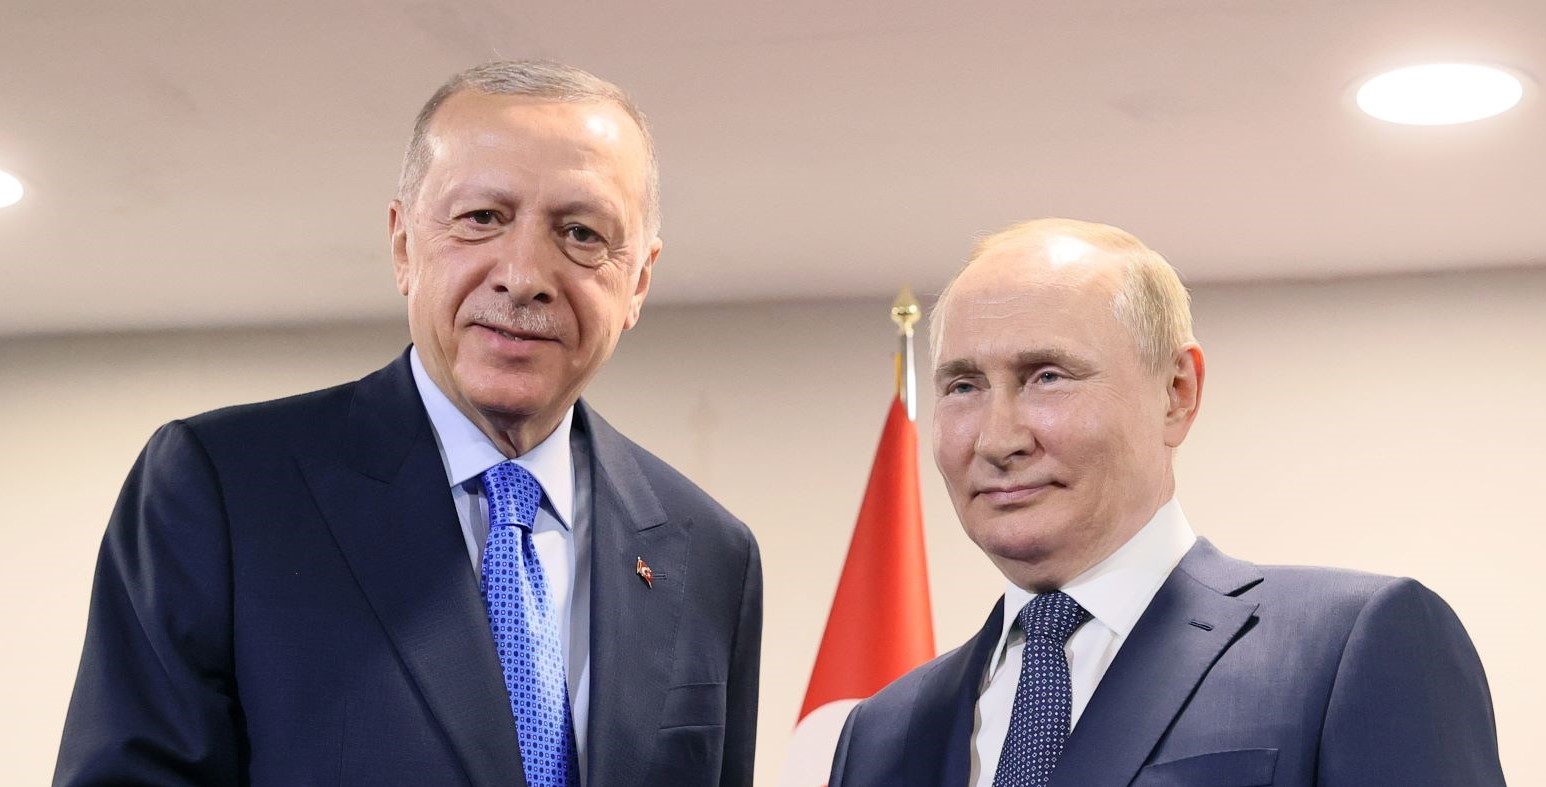 Ο Βλ. Πούτιν με τον Ρ.Τ. Ερντογάν ©EPA/SERGEI SAVOSTYANOV